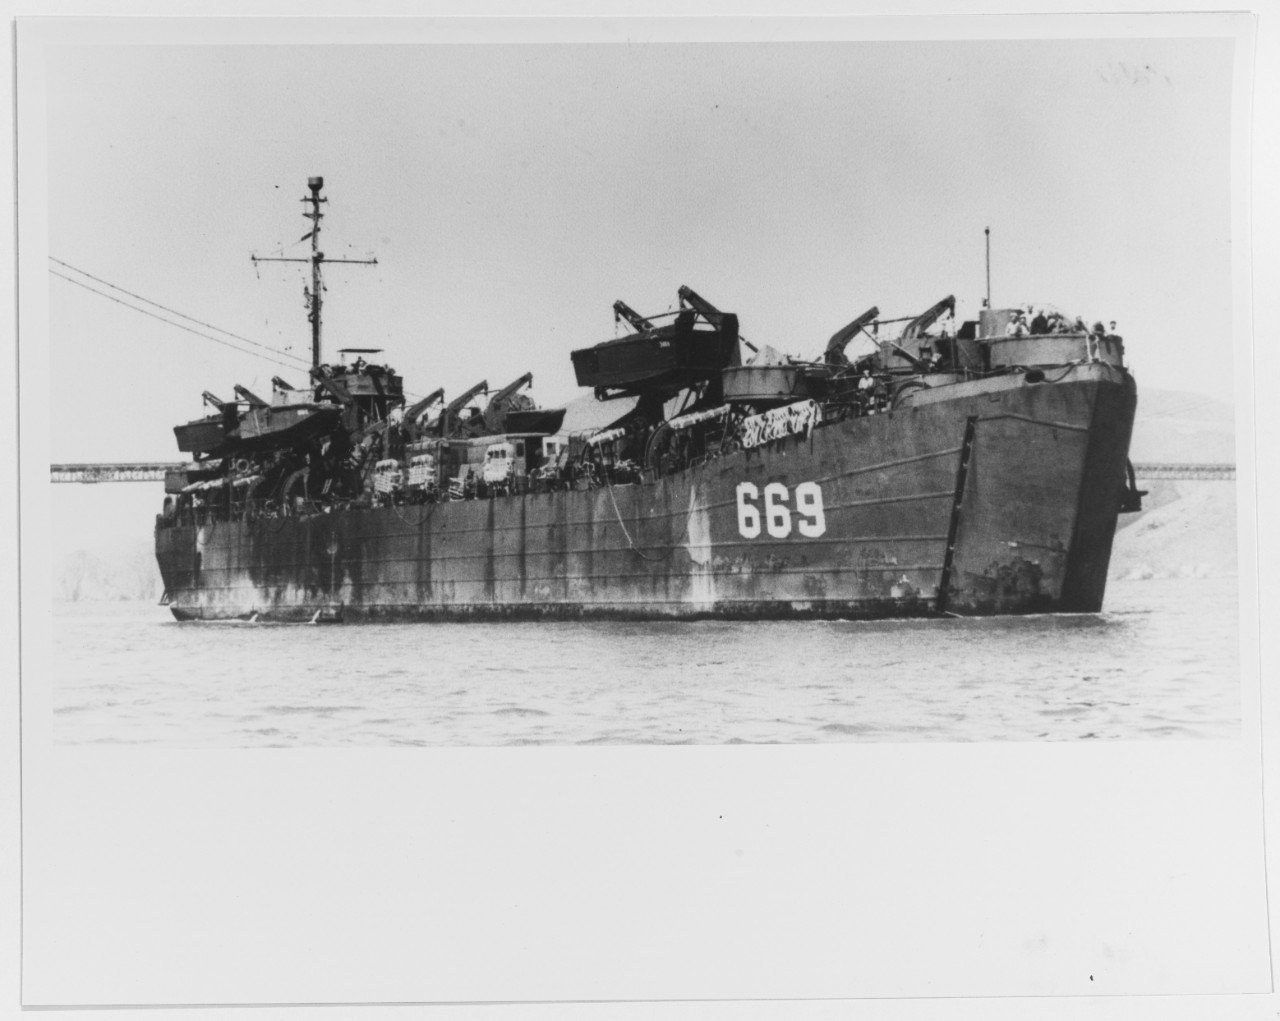 USS LST-669